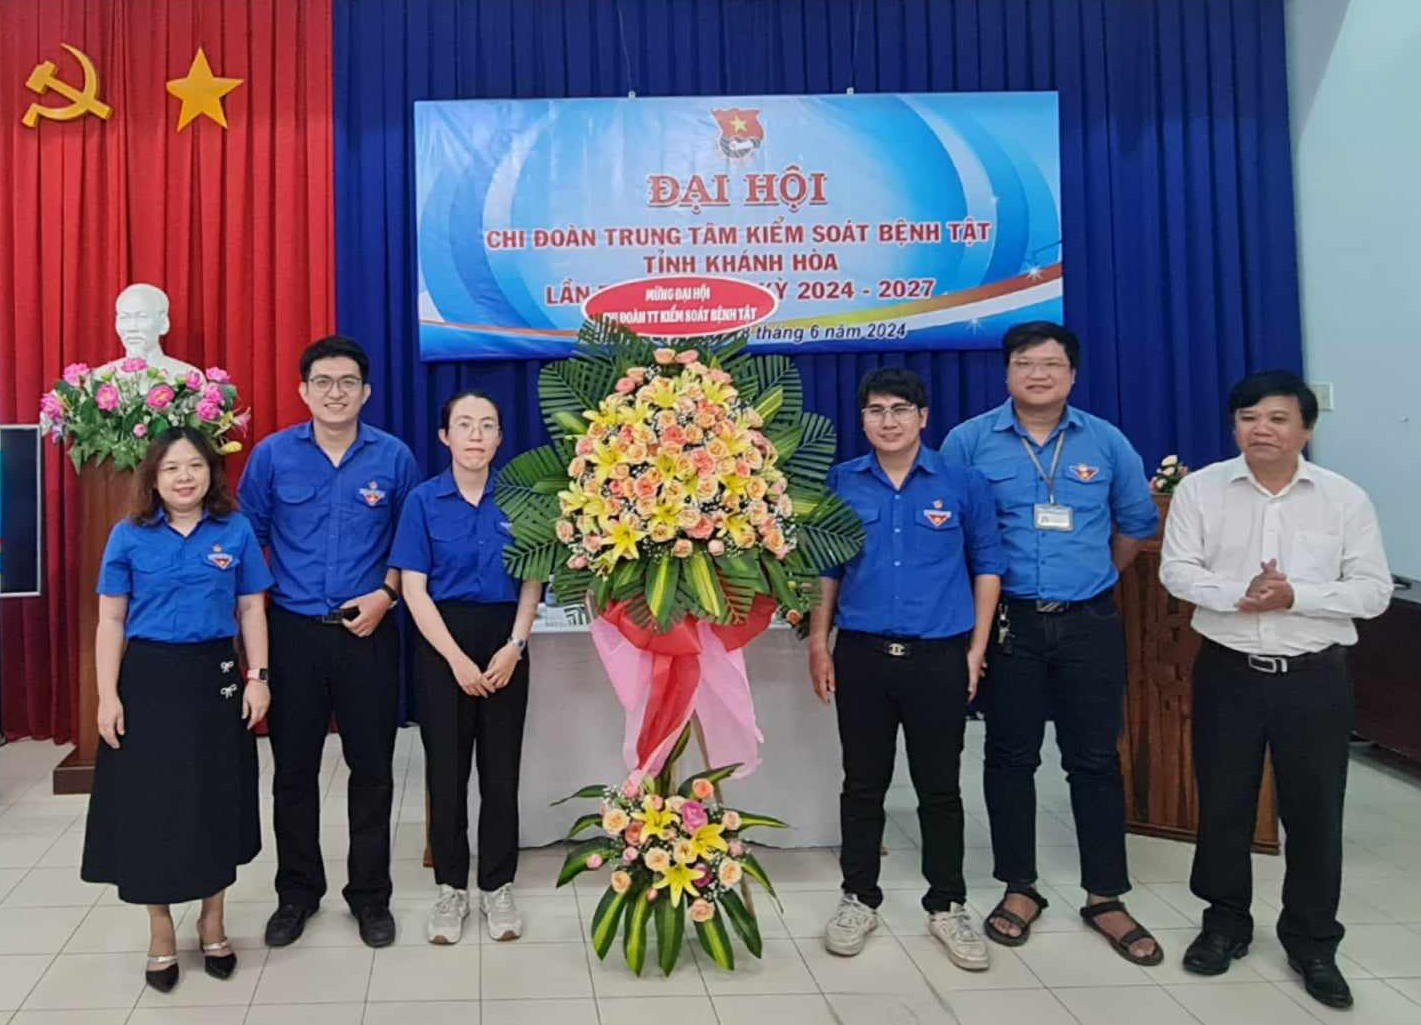 Đại hội Chi đoàn Trung tâm Kiểm soát bệnh tật tỉnh Khánh Hòa, nhiệm kỳ 2024 – 2027